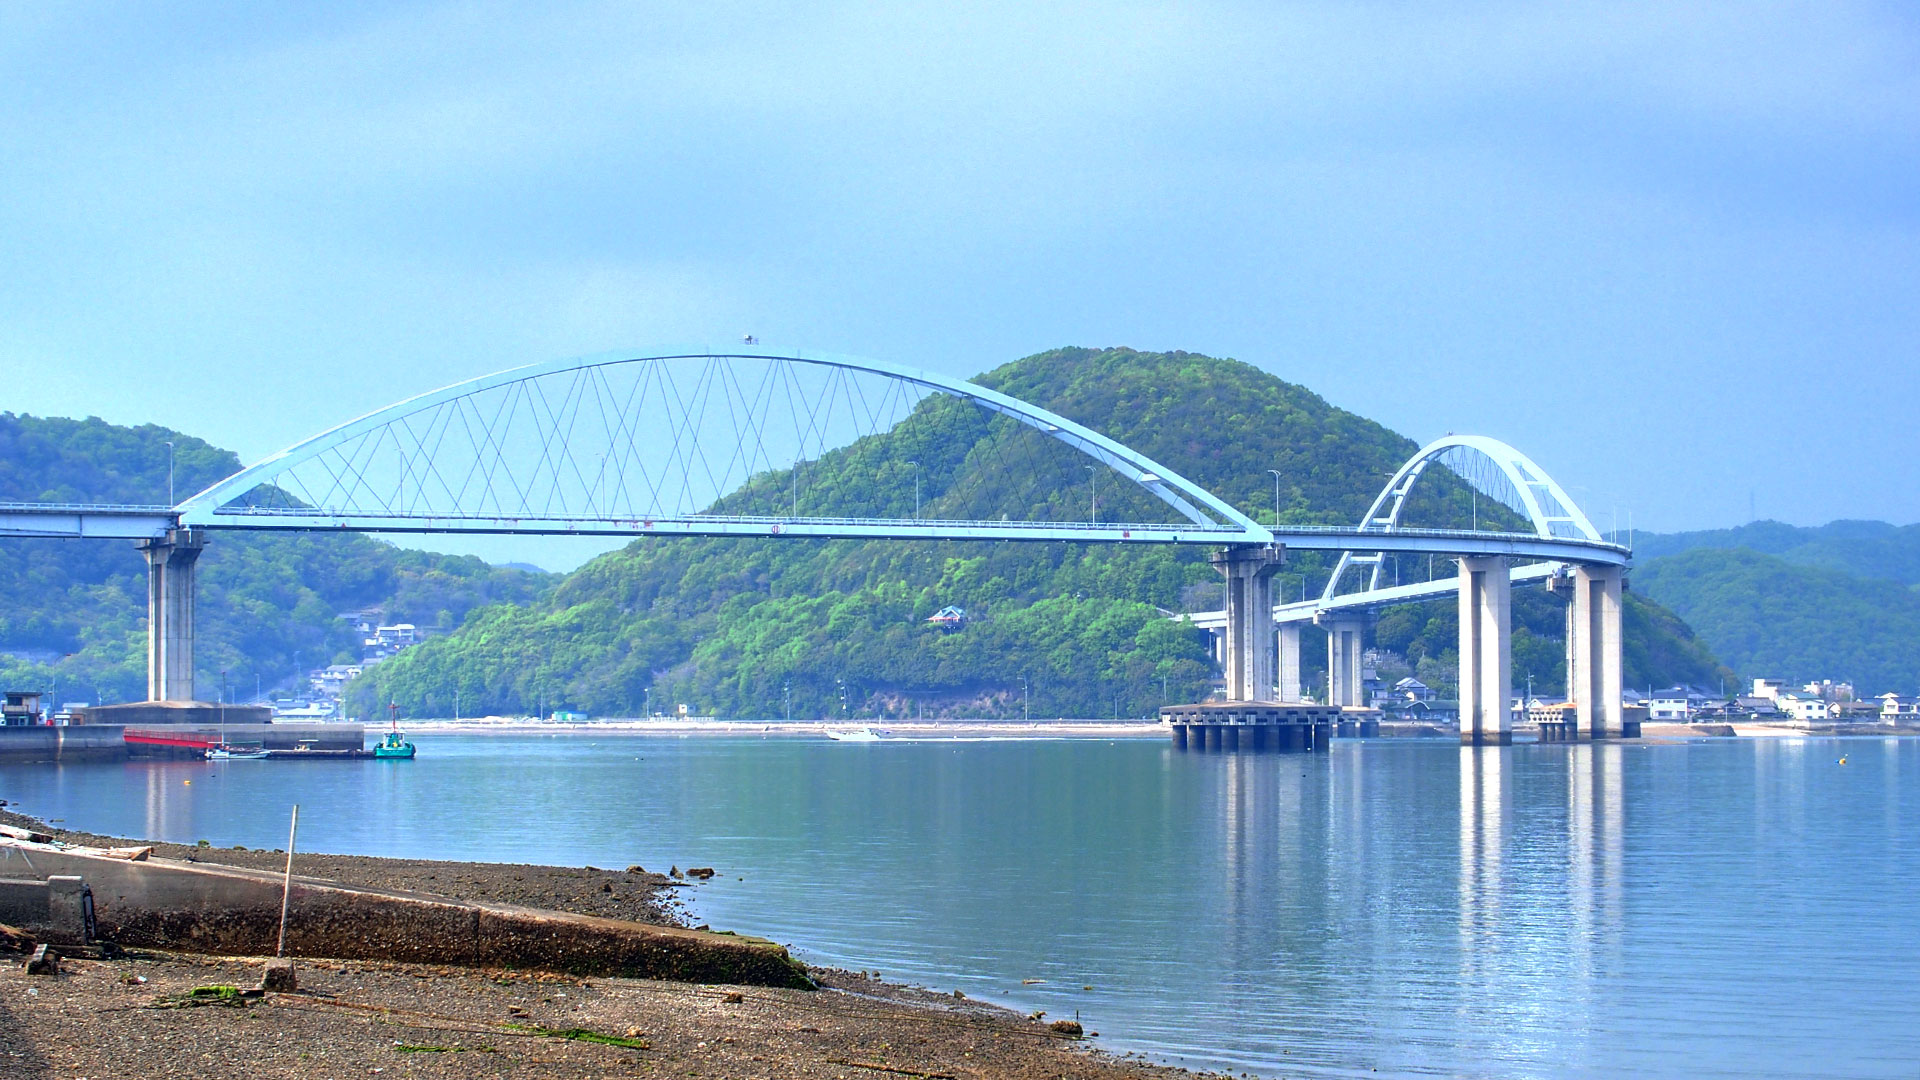 内海大橋は、沼隈半島の先端・沼隈町常石と内海町の田島を結ぶ橋です。1989 年 (平成元年) に完成しました。全長は832mで、「くの字」にカーブしているのが特徴です。